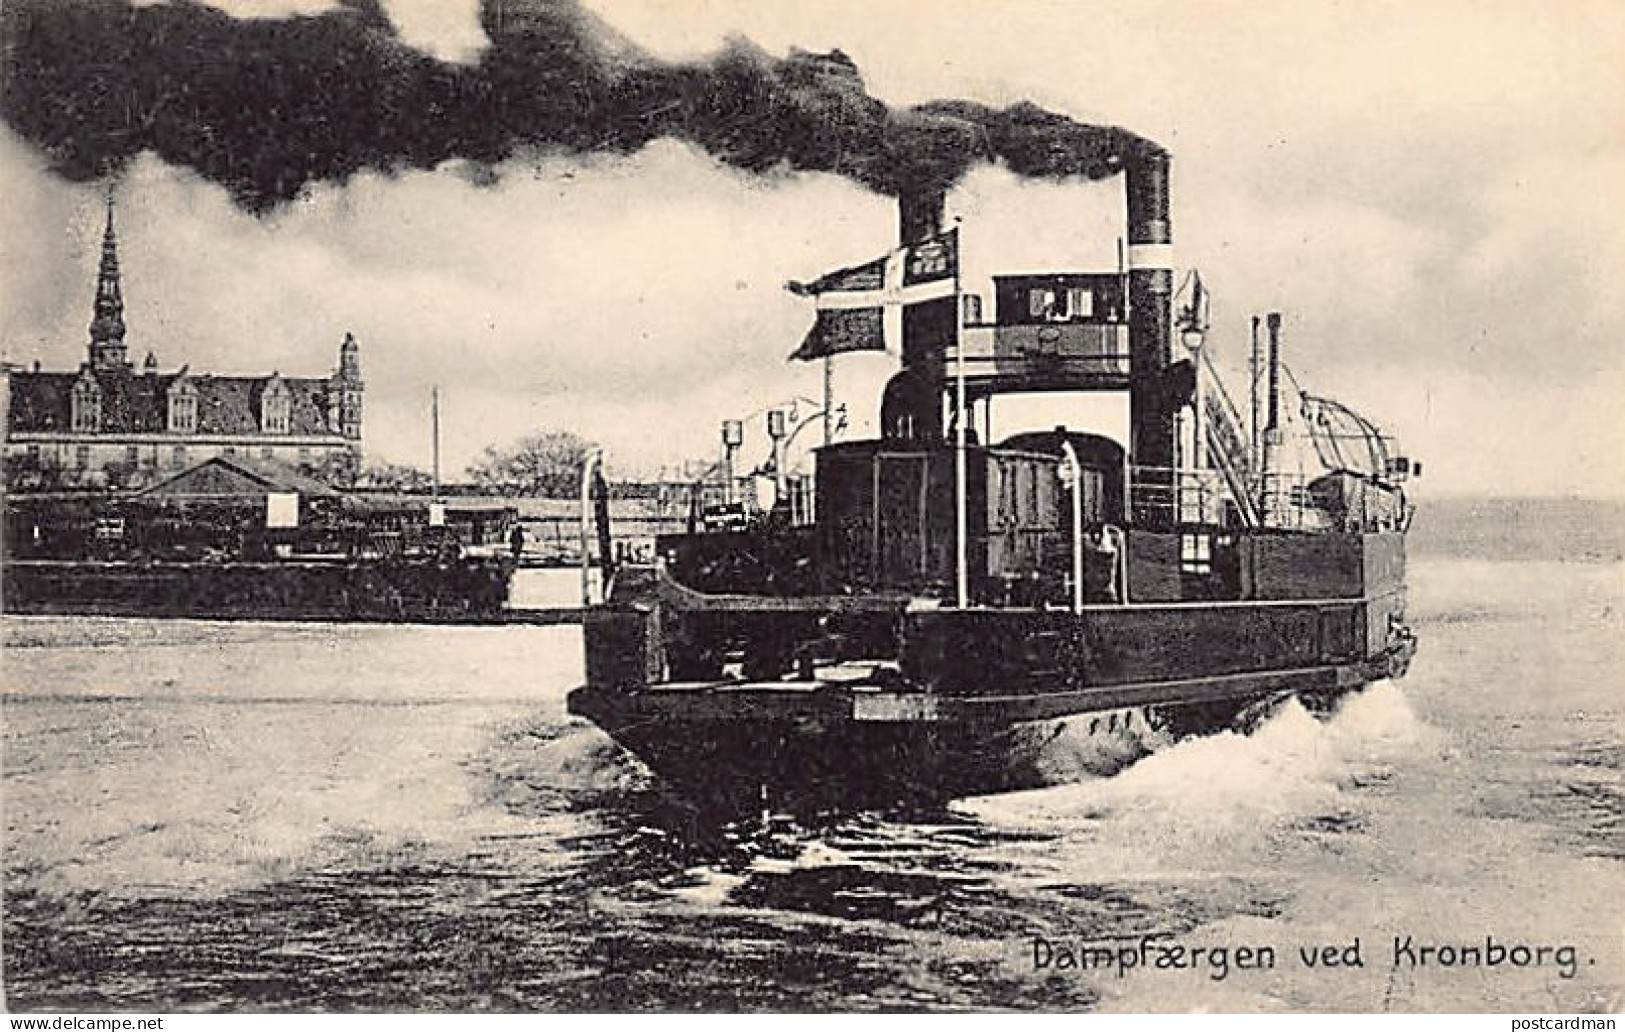 Denmark - HELSINGOR - Dampfaergen Ved Kronborg - Ferry Boat - Publ. Knud Nielsen  - Danemark